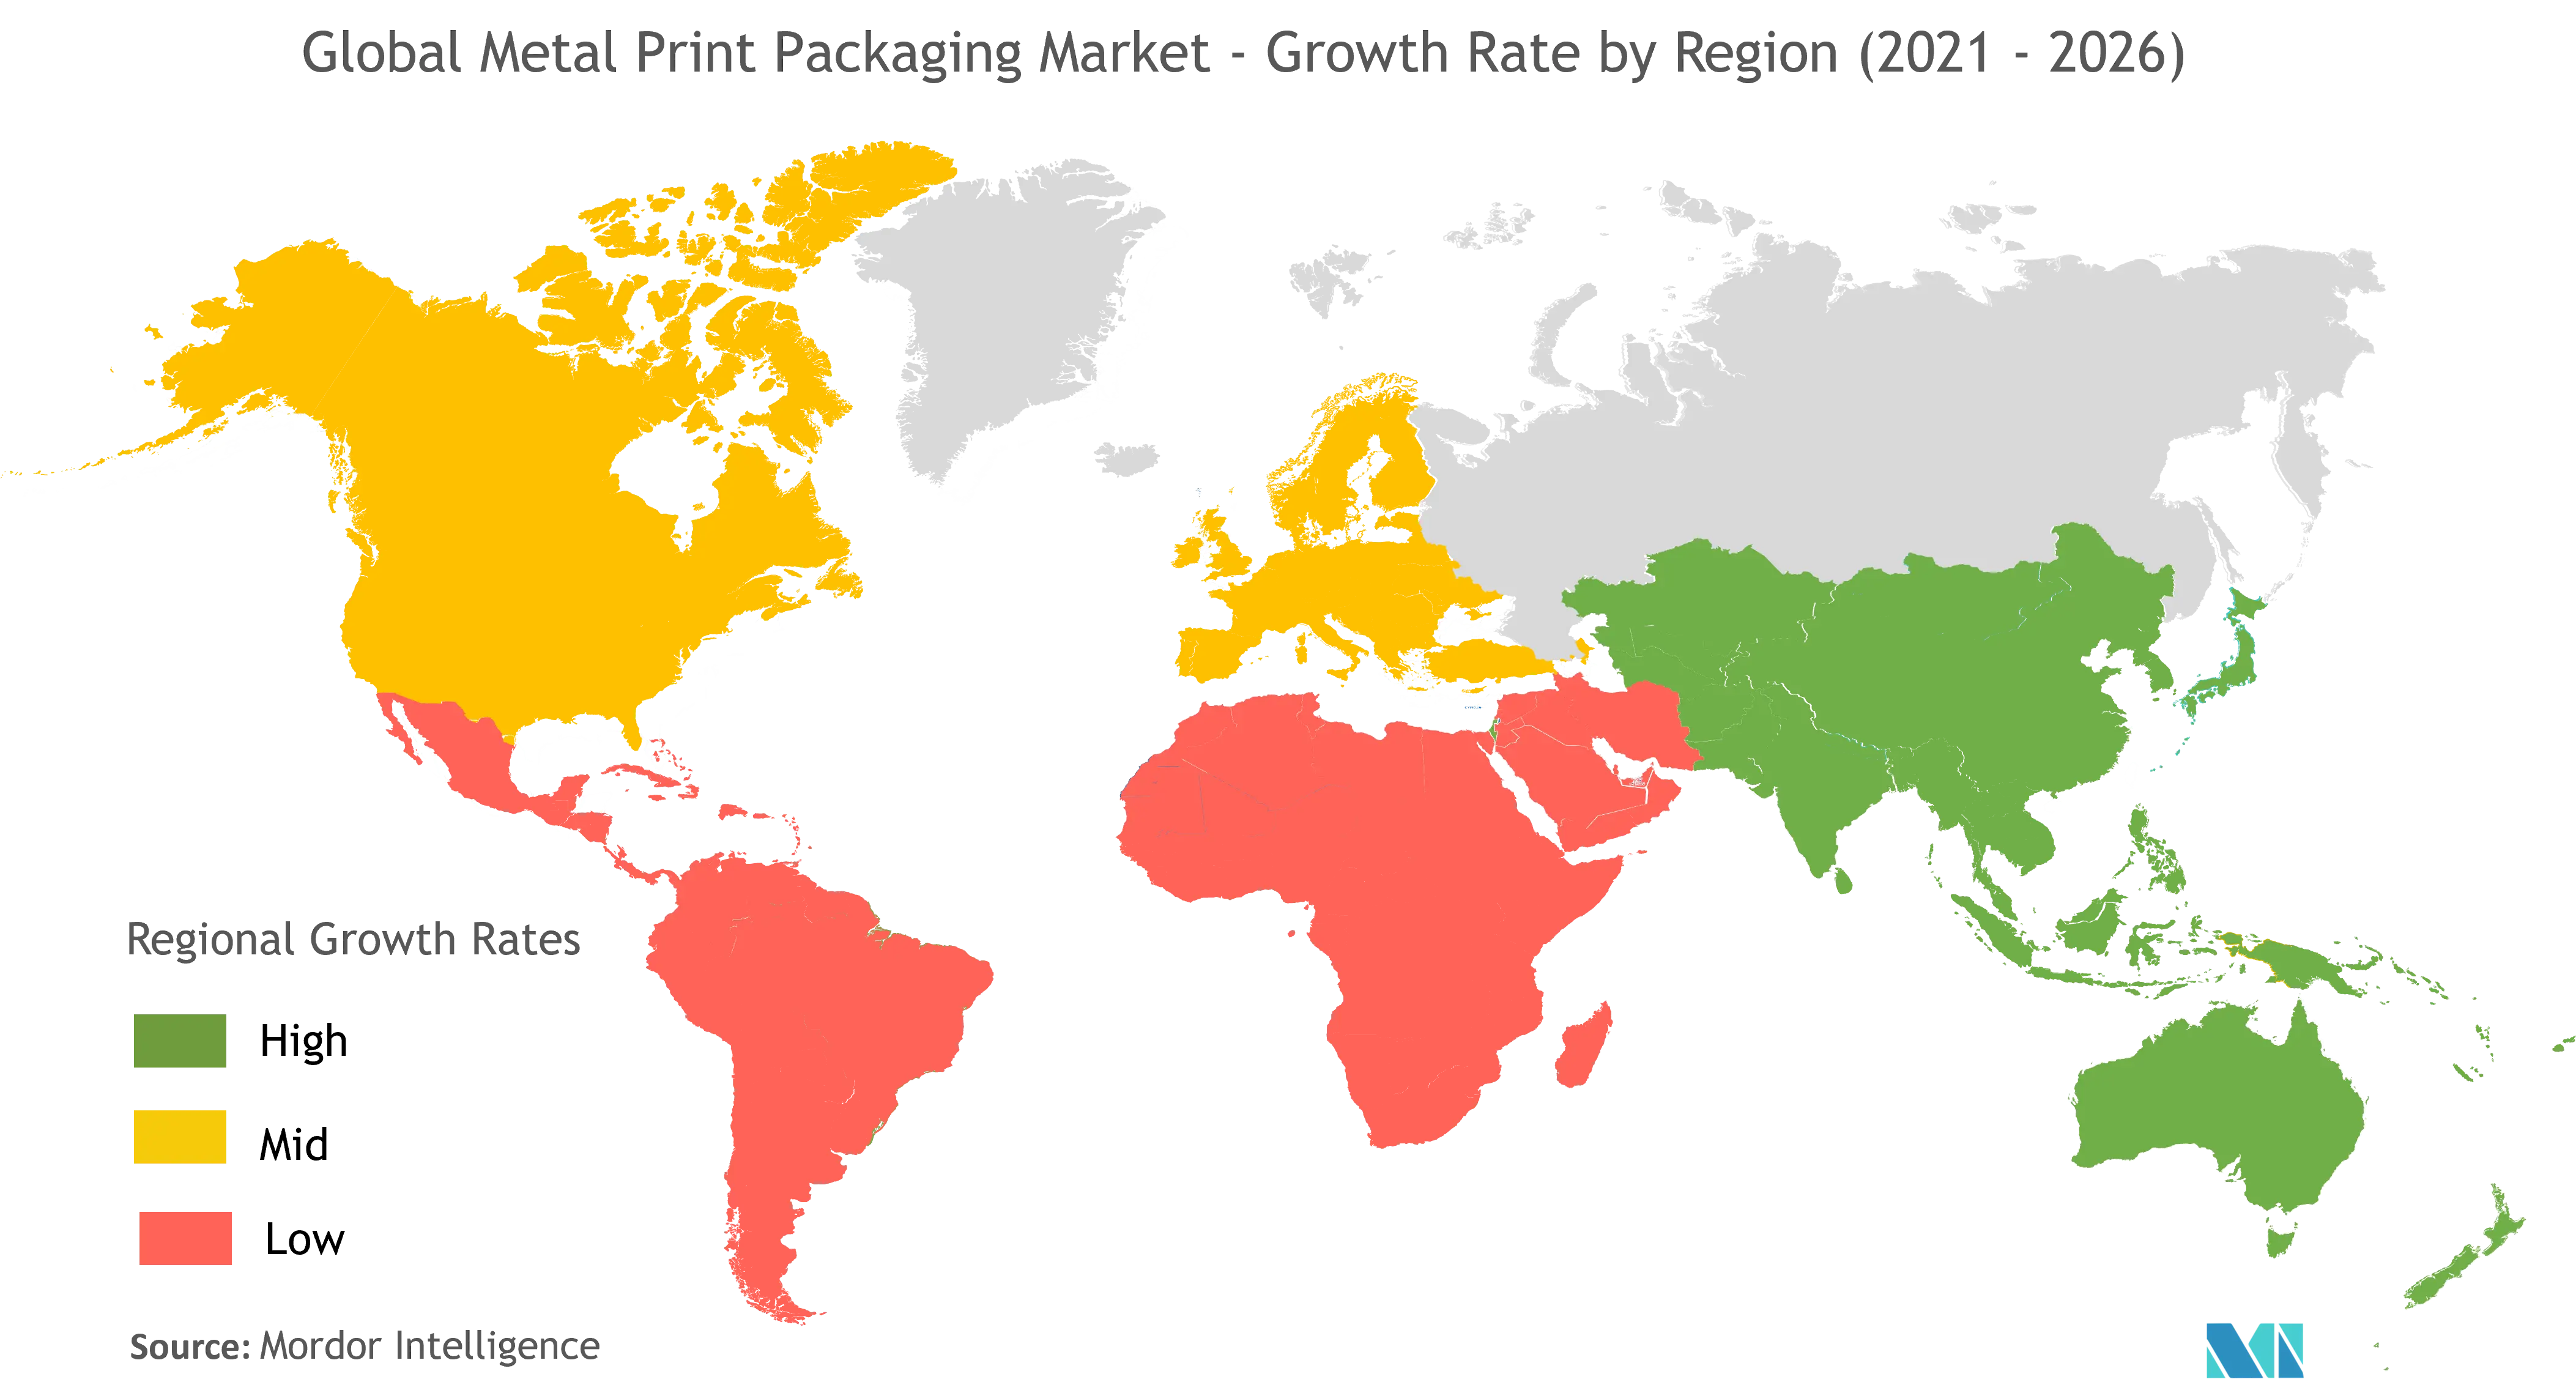 Metal Print Packaging Market Growth Rate